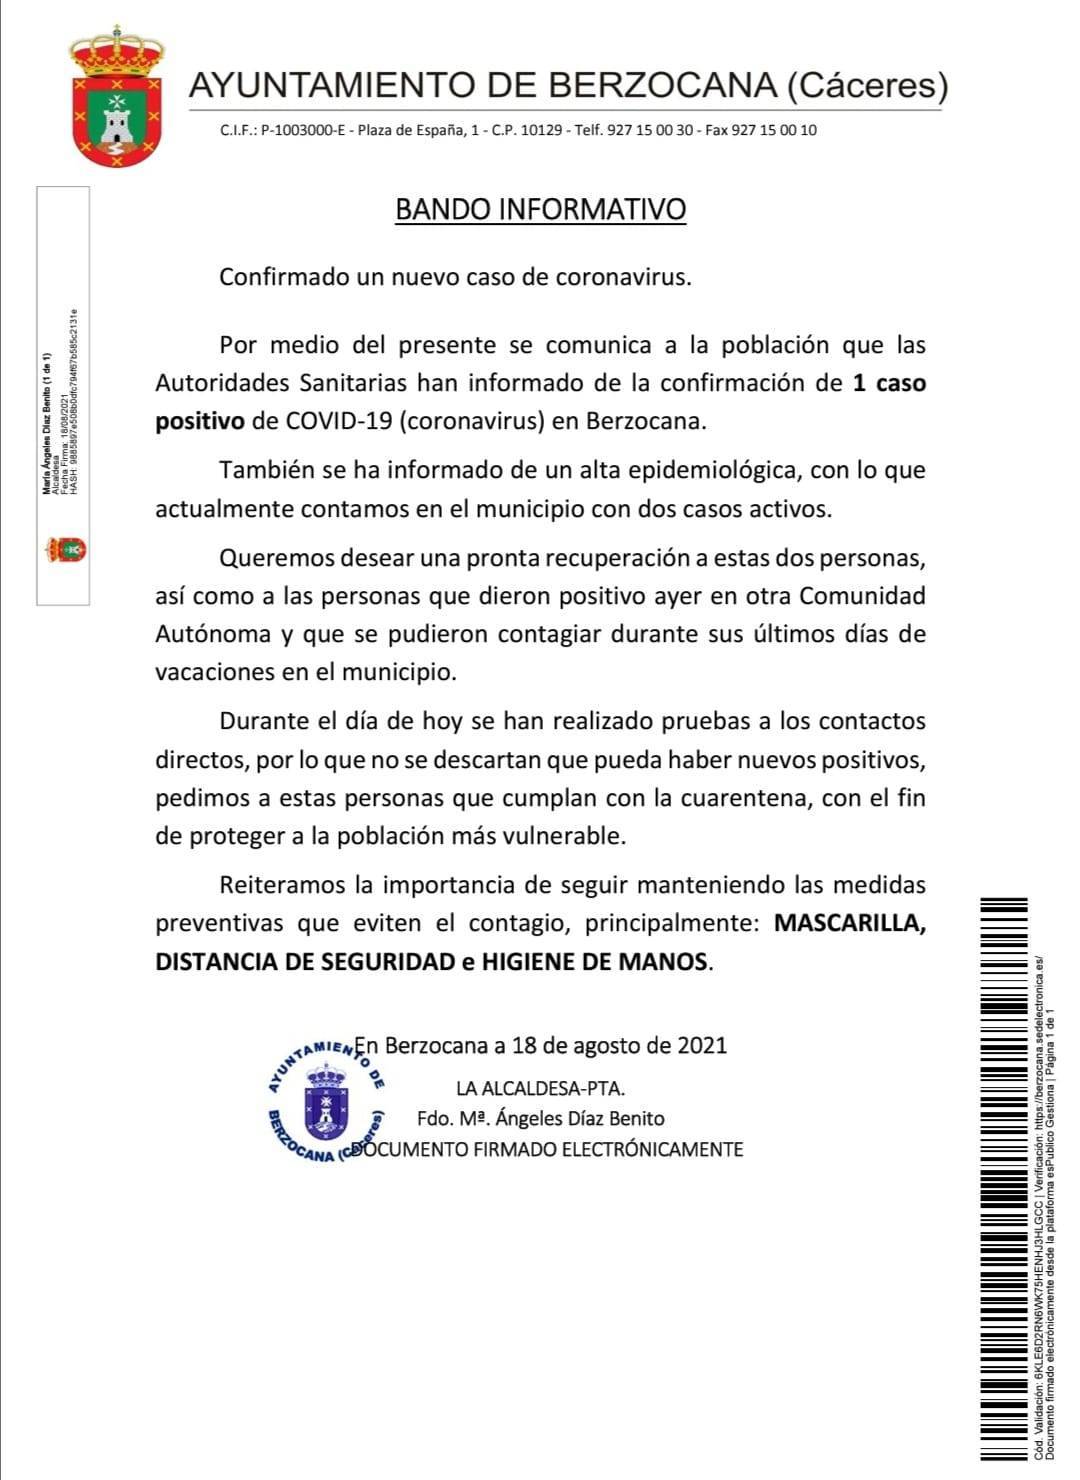 Dos casos positivos activos de COVID-19 (agosto 2021) - Berzocana (Cáceres)